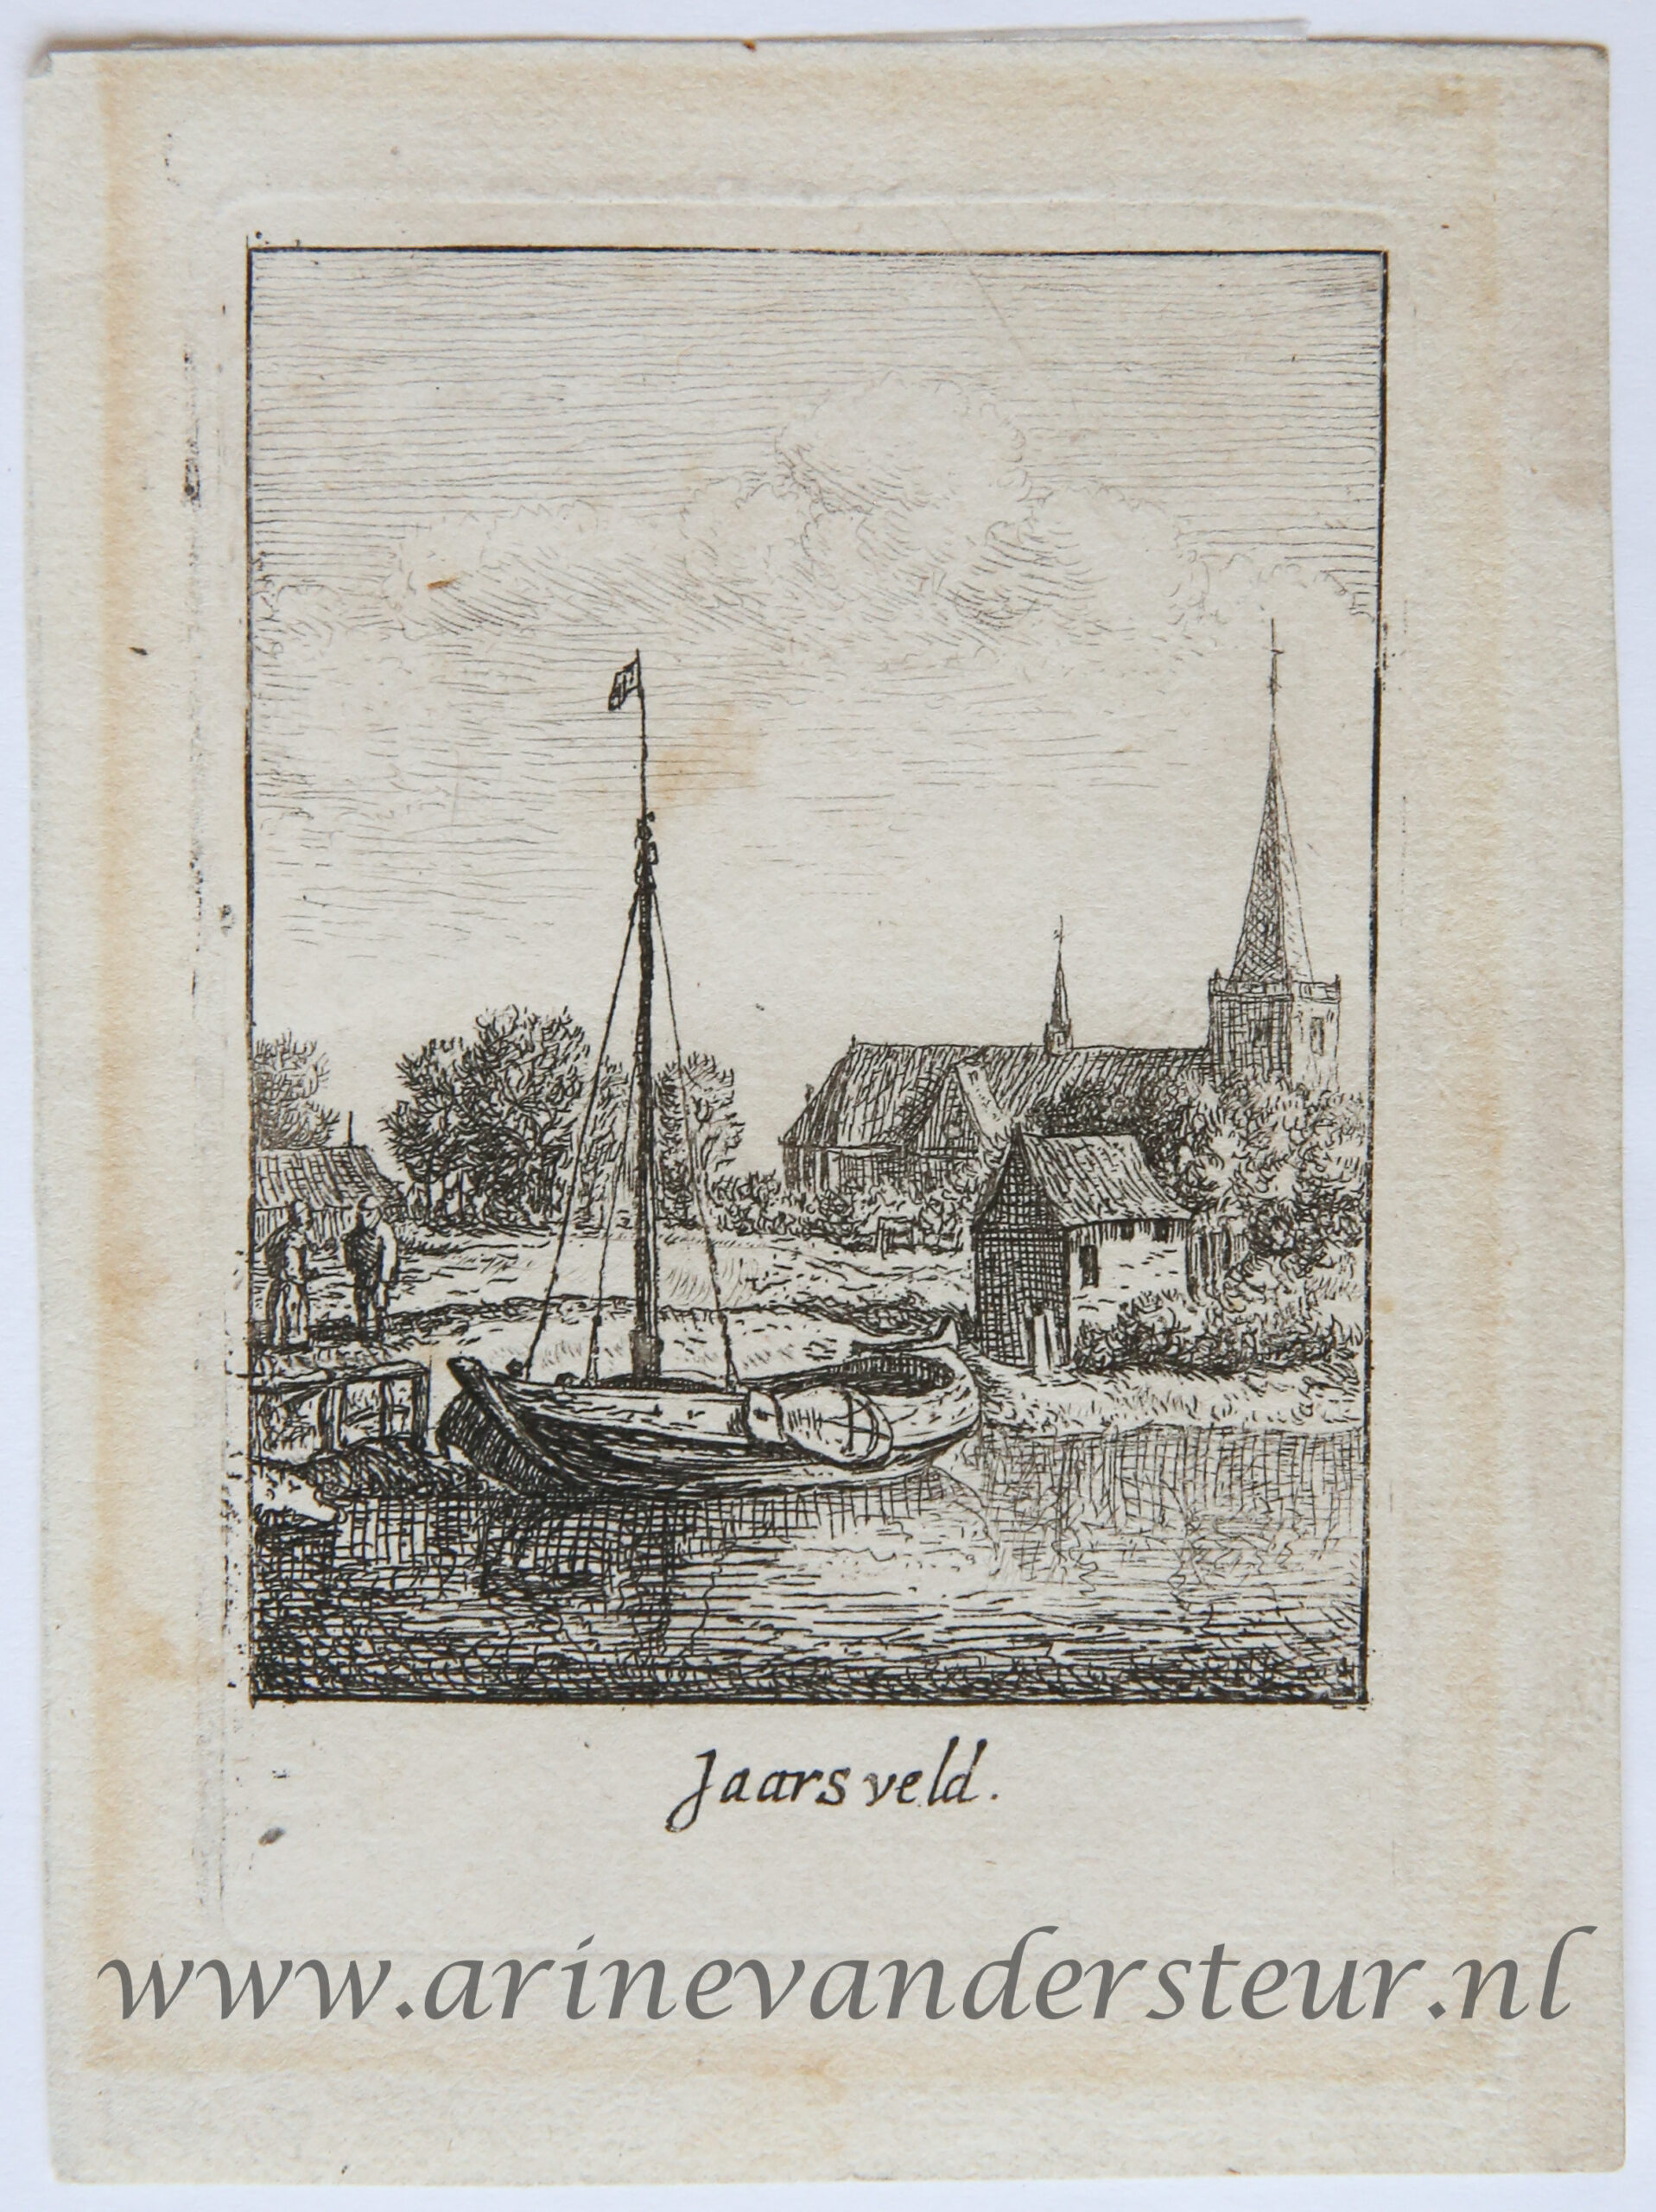 [Original etching, ets] J. v. Almeloveen after H. Saftleven. The village of Jaarsveld, published 1650-1700 .